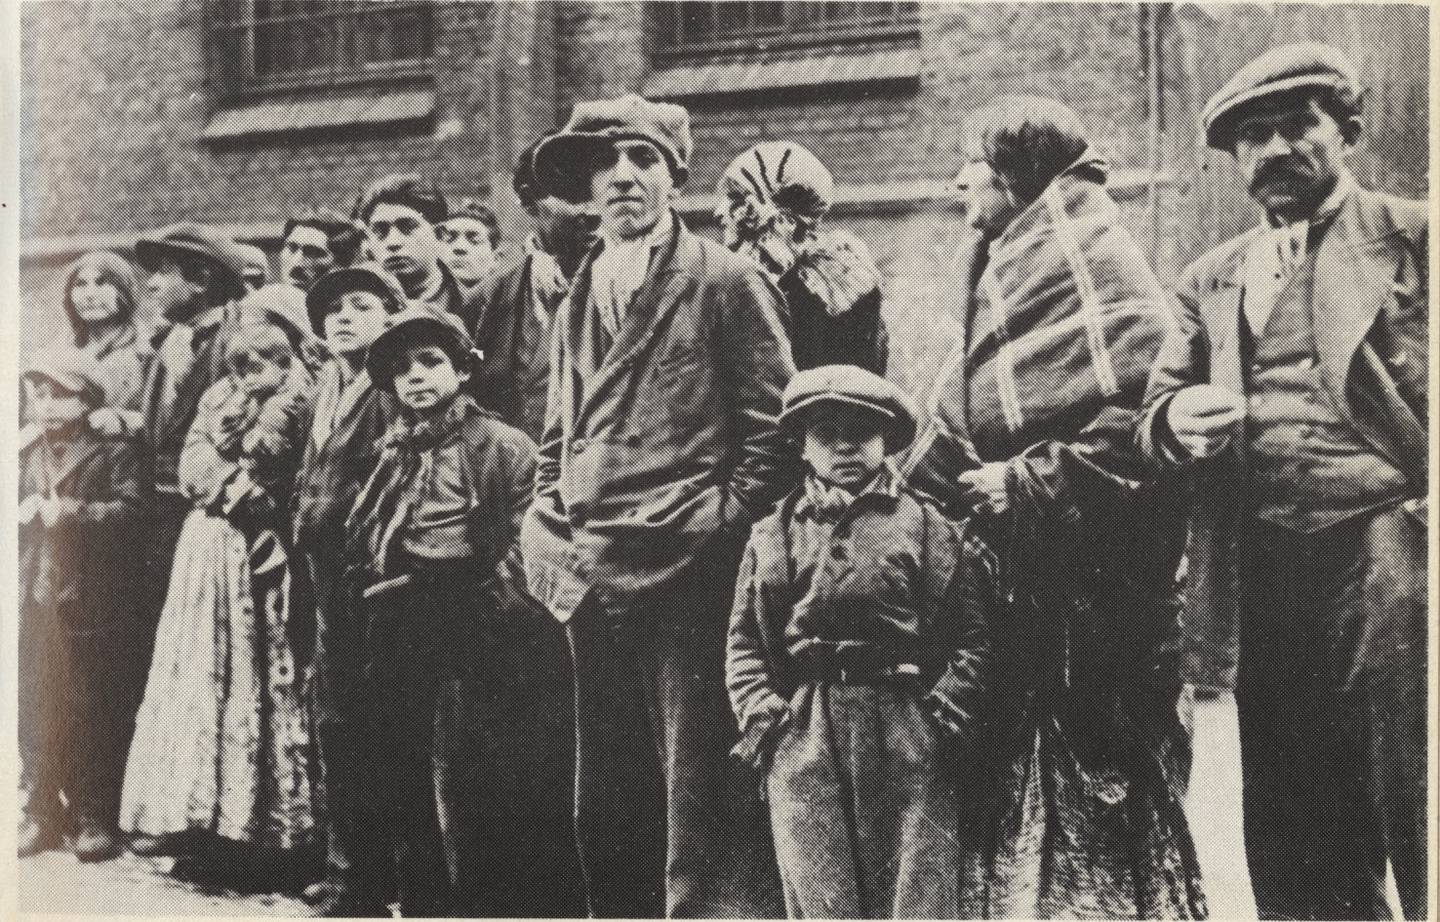 68 norske romer ble nektet innreise til Norge i 1934. Bildet viser gruppen før de ble uttransportert fra Padborg i Danmark til Tyskland, hvor de ble internert i naziregimets første rene «sigøynerleir». Josef Karoli til høyre var blant de mange som senere ble drept i Auschwitz-Birkenau.